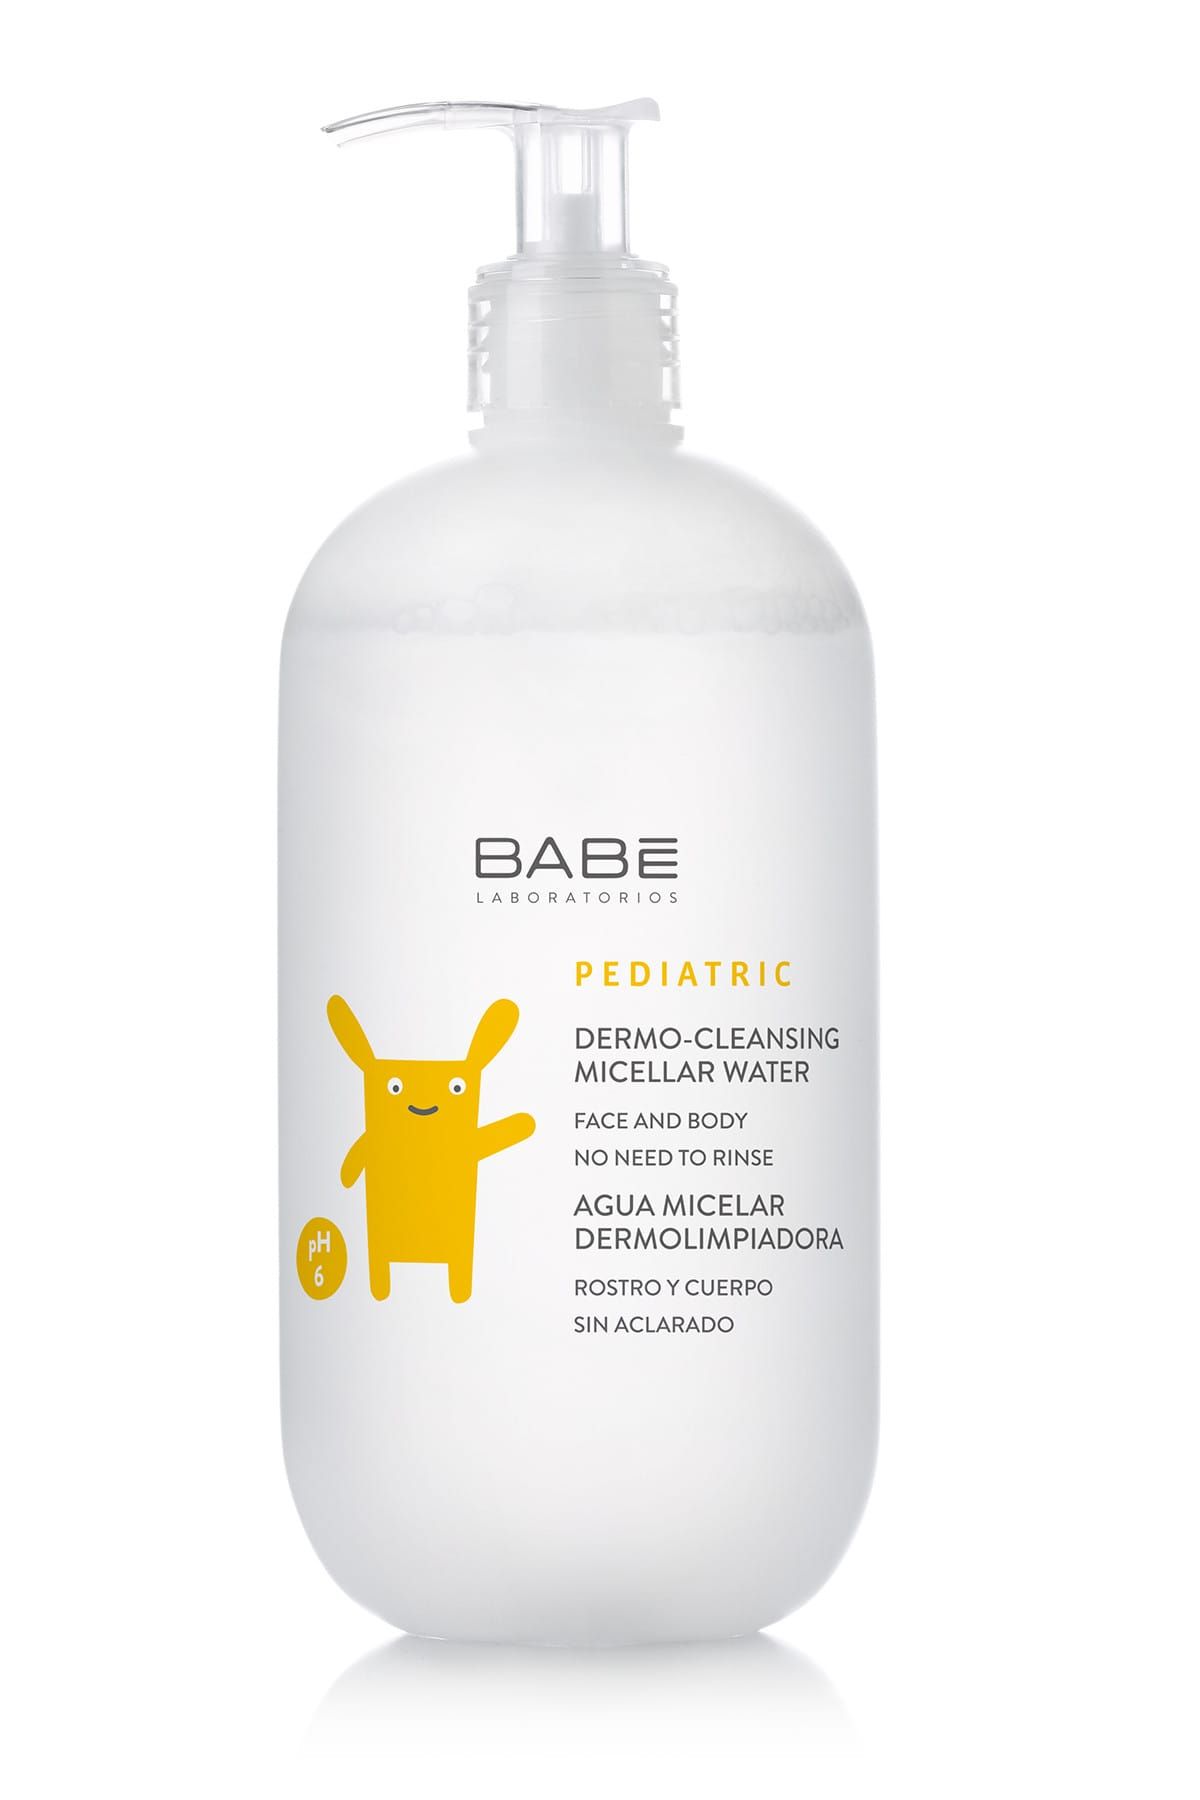 Babe Laboratorios Pediatric Dermo-Cleansing Micellar Water -  Durulama Gerektirmeyen Temizleme Suyu 500 ml